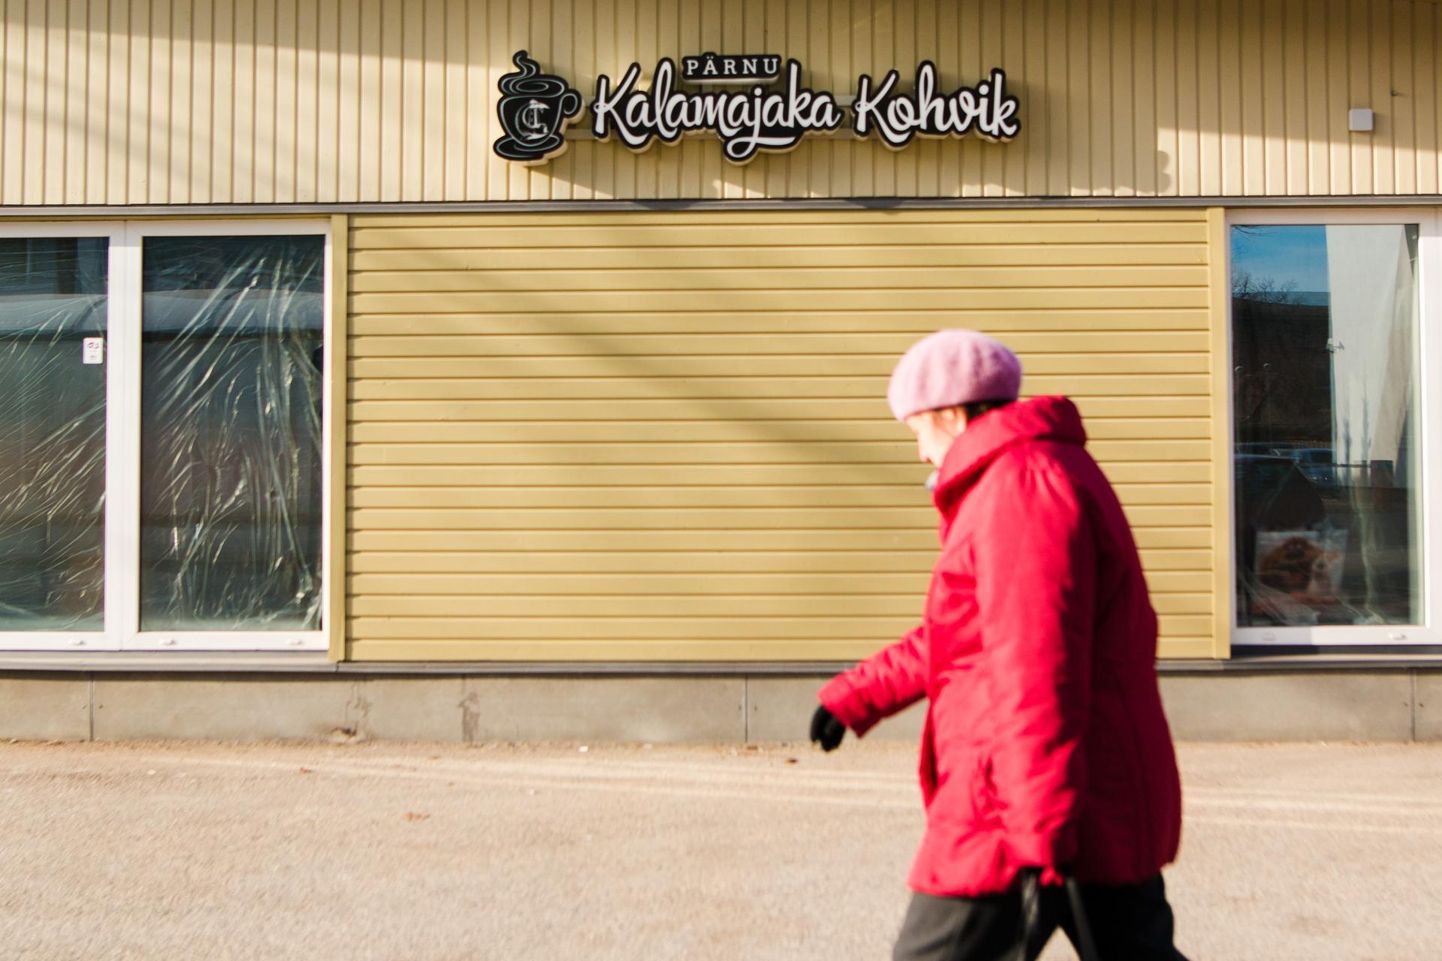 Pärnu Kalamajaka kohvik sulges eriolukorra algul valitsuse soovitusest lähtuvalt uksed, kuu hiljem otsustas söögikoht pillid jäädavalt kokku panna.  